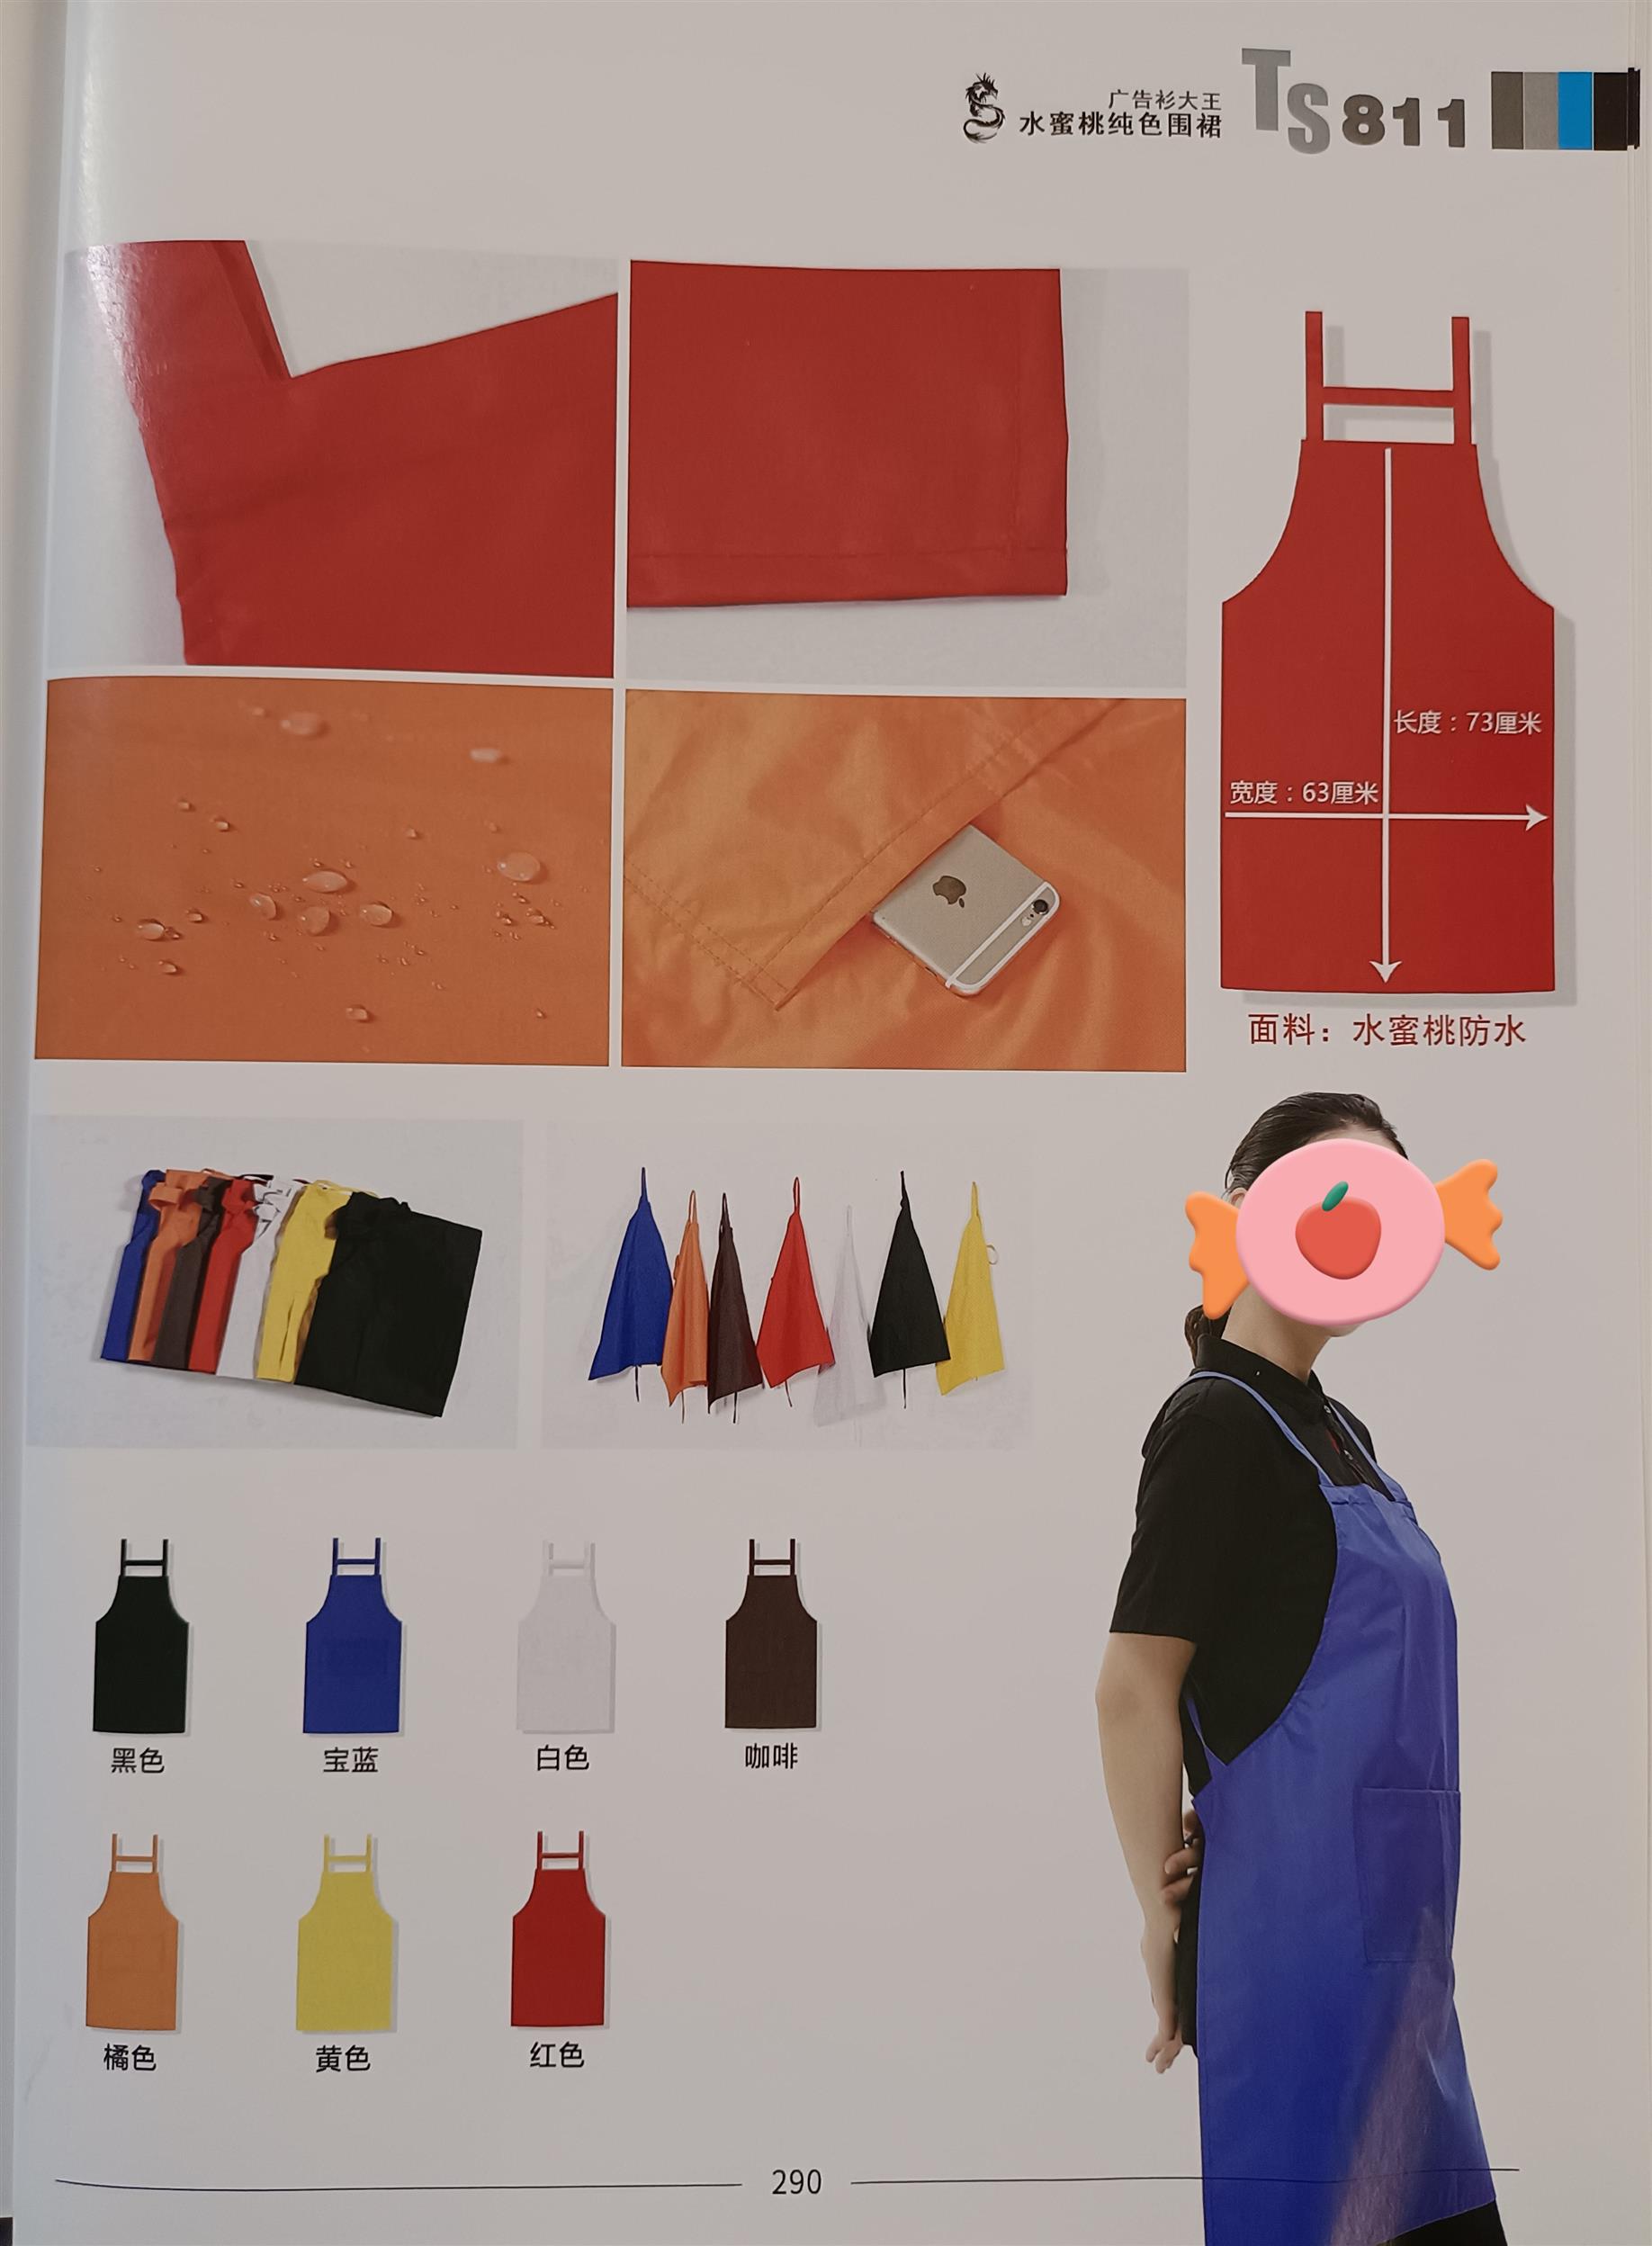 潮州生产围裙服装供应商 东莞市茶山华升服装设计服务部